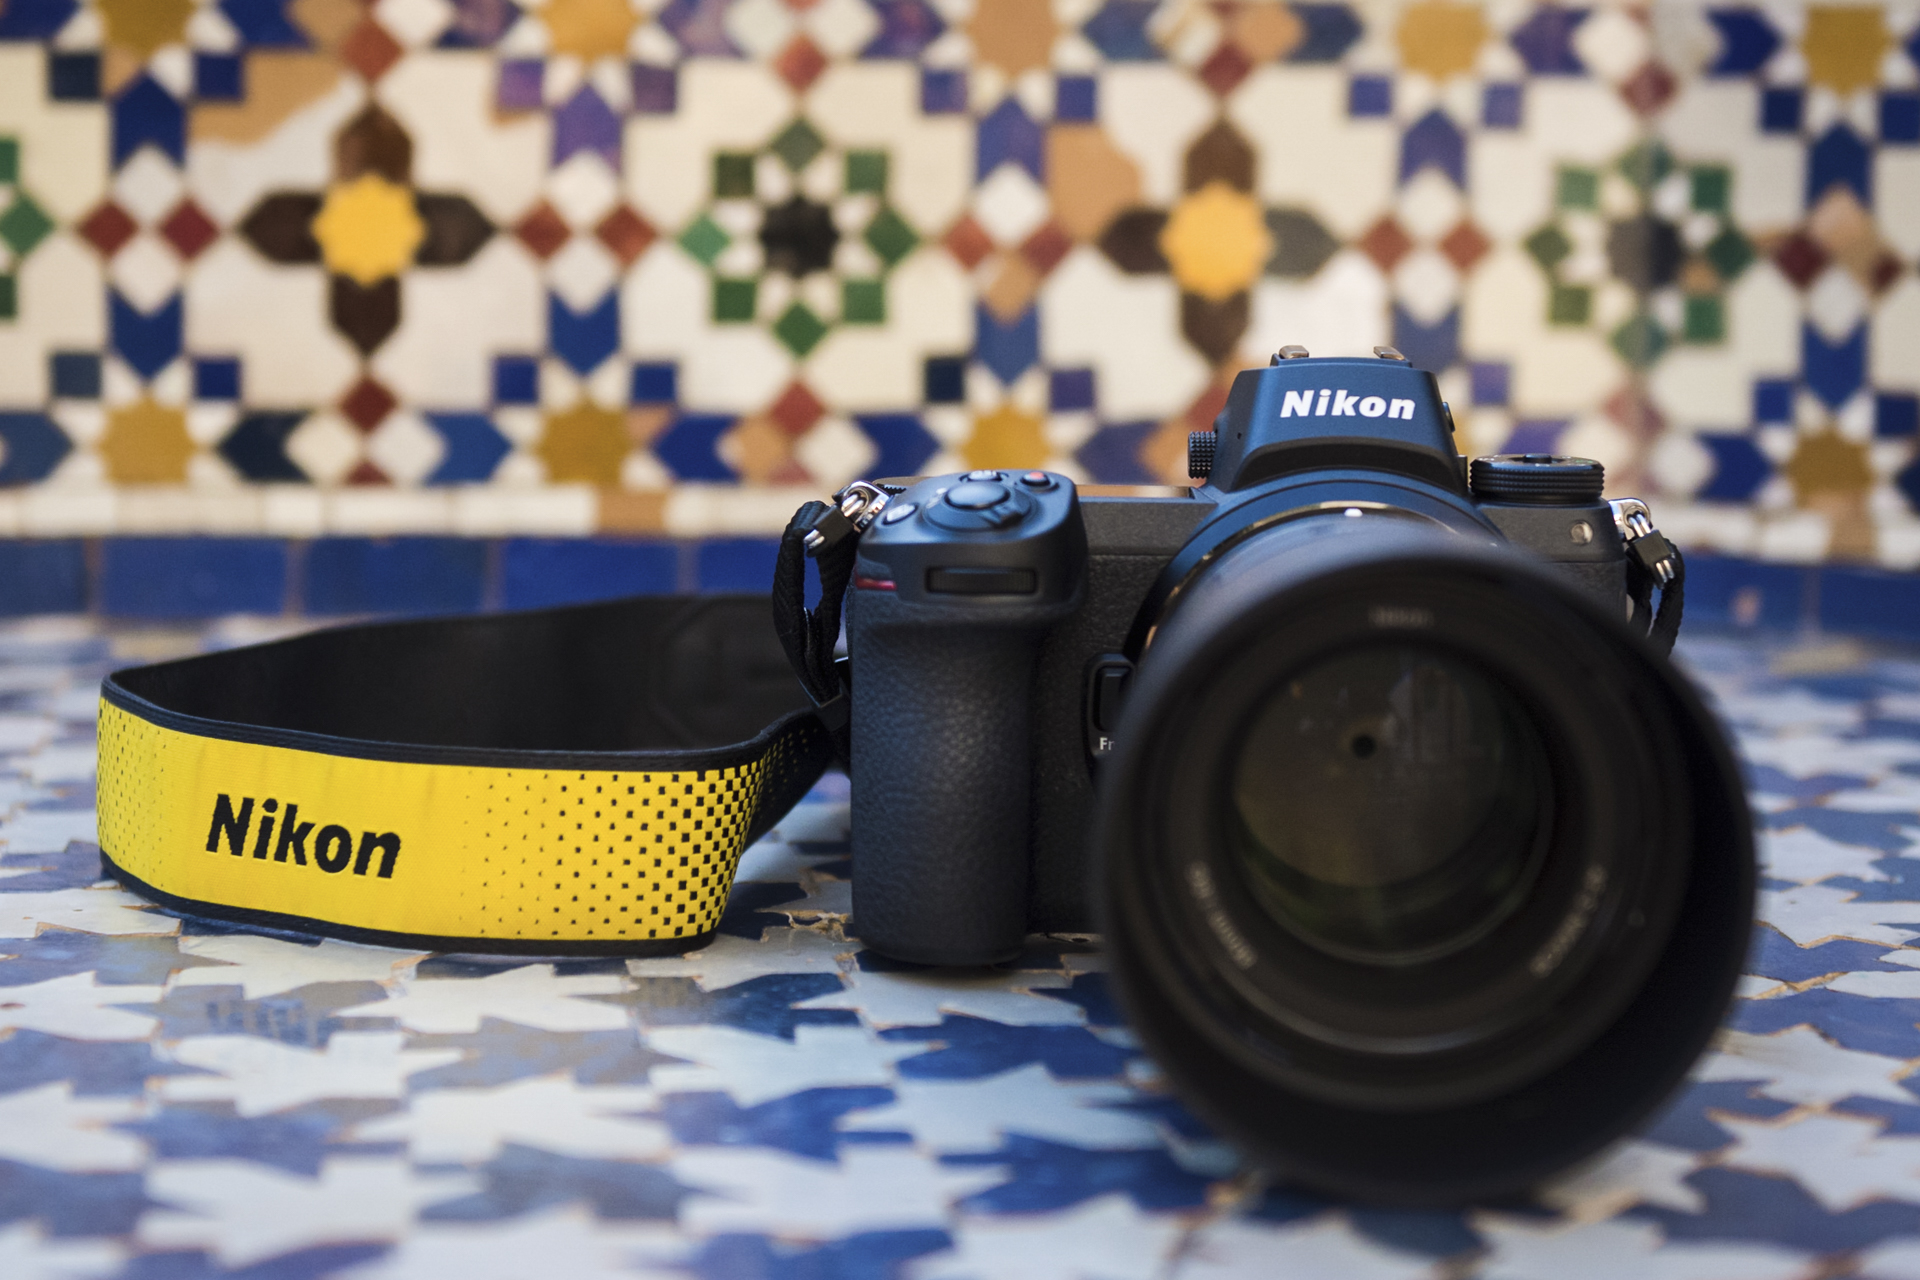 Nikon Z6: Digital Photography Review